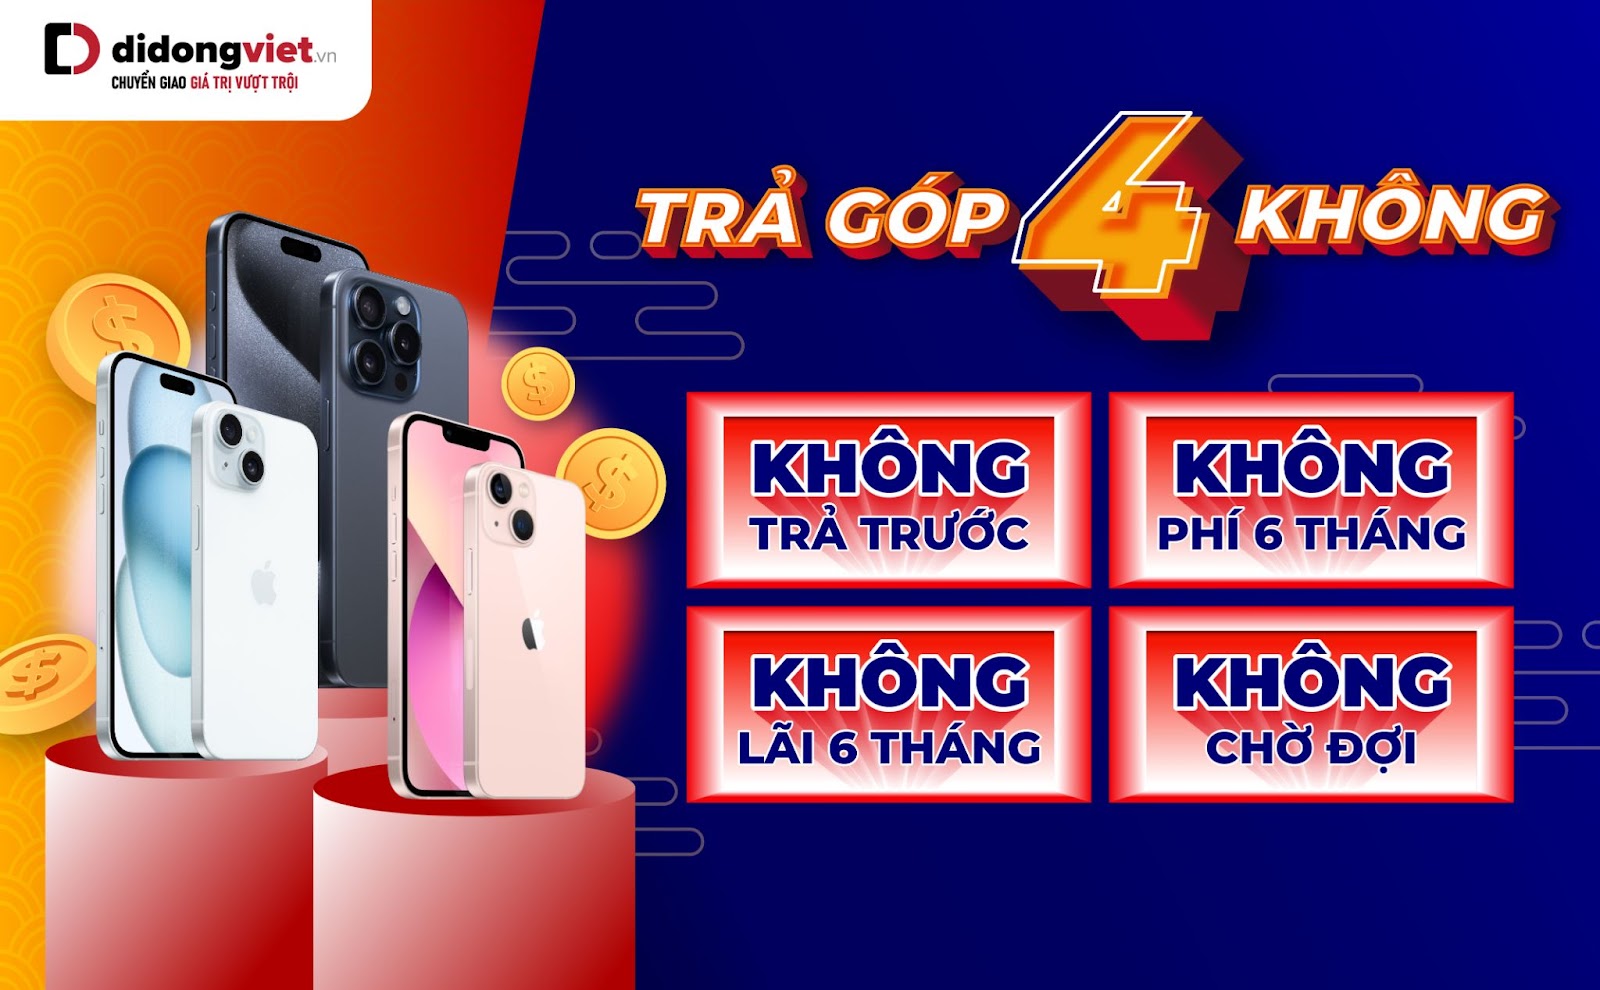 Giá iPhone tại Di Động Việt đang ở mức rẻ và hưởng ưu đãi 4 không - XjfvwQ7wbM7MMJkFe6zuTGdmONmKkPJa JETOj0xGn3KCZ8rxs6LYKjuUMN6UxfceQqnPHQVkQL5bc4JVSi3Q31hQrcb0LmYPH7ZsNiBm3xG6lbhkSnHoeMwcx9hiOykwhjmmr T